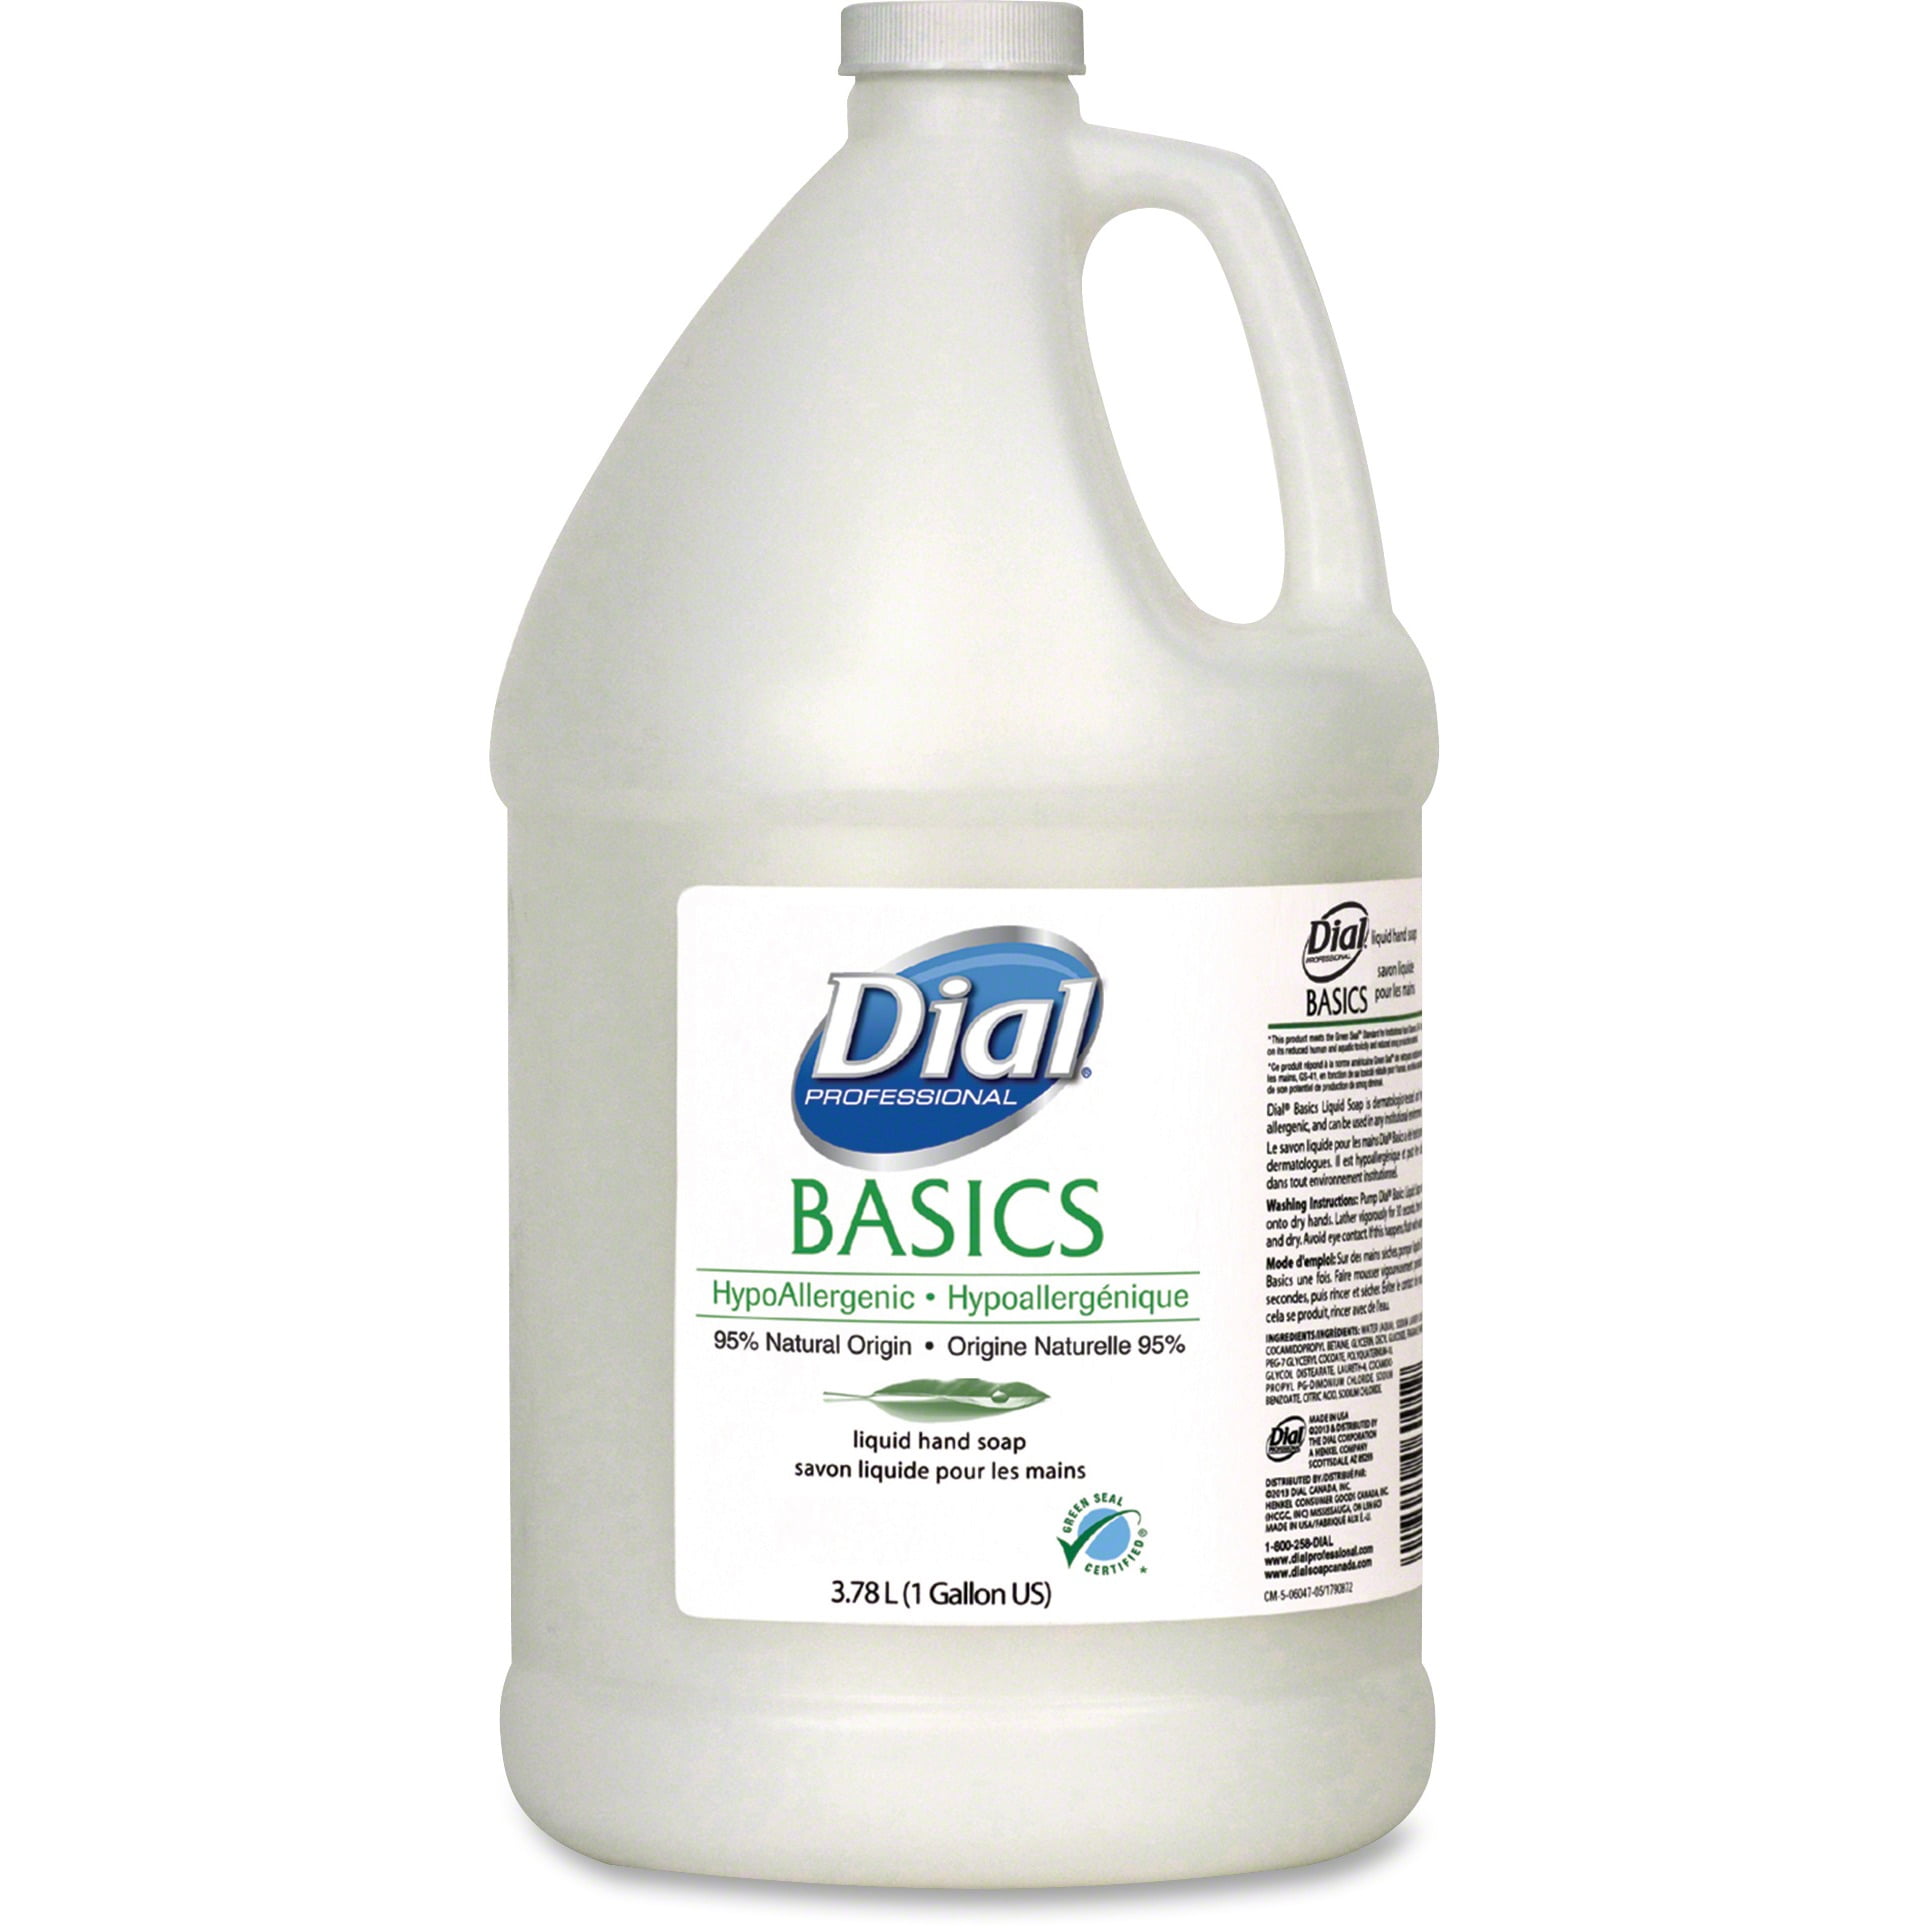 Dial, DIA06047, Basics Liquid Hand Soap Refill, 1 / Each, White